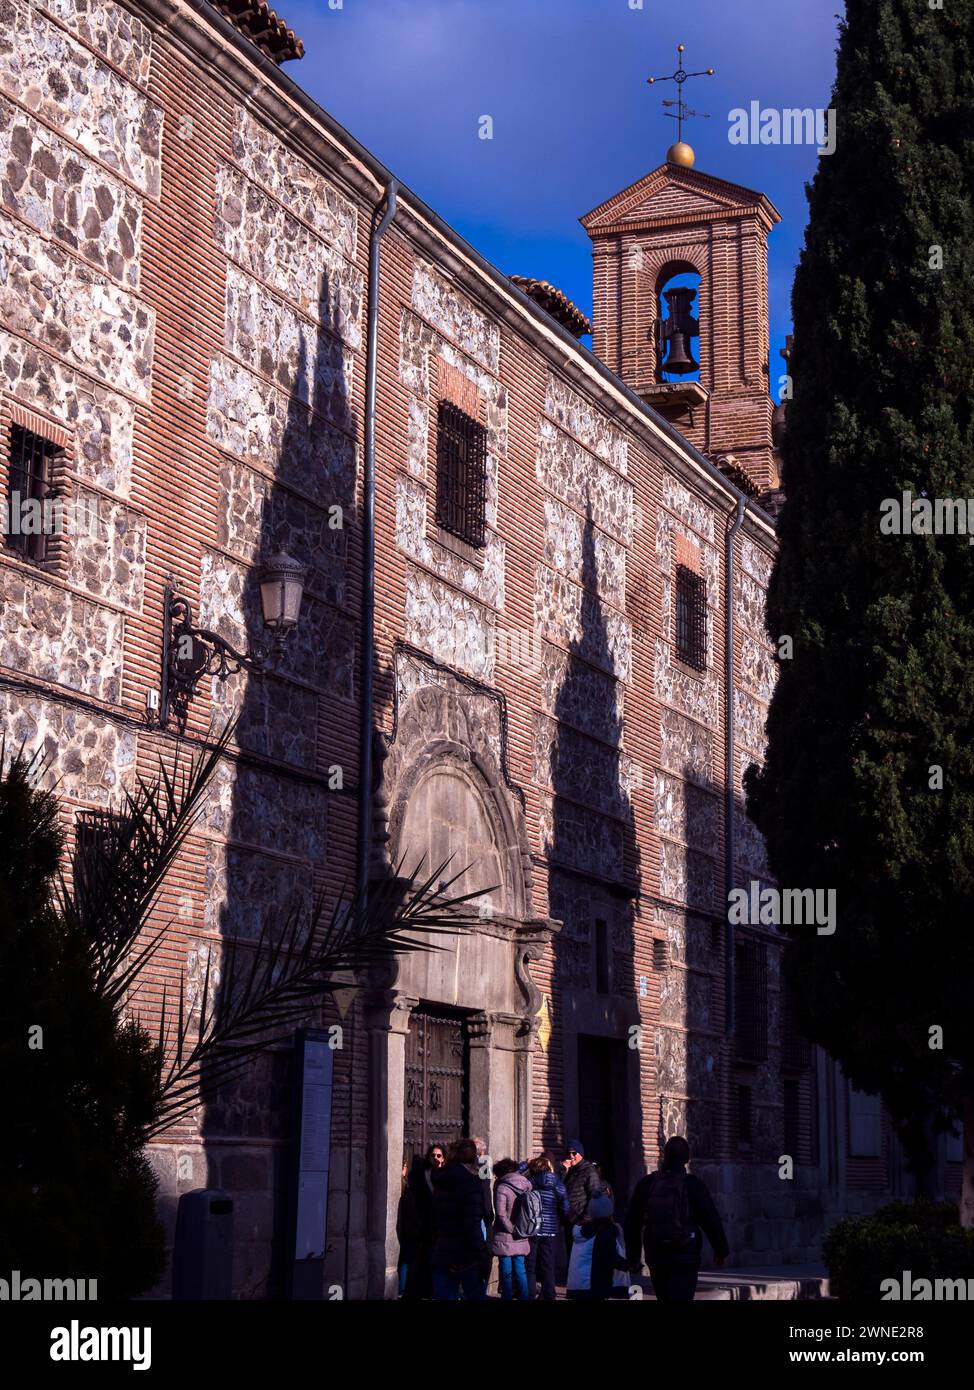 Monasterio de las Descalzas Reales. Madrid. Espagne Banque D'Images